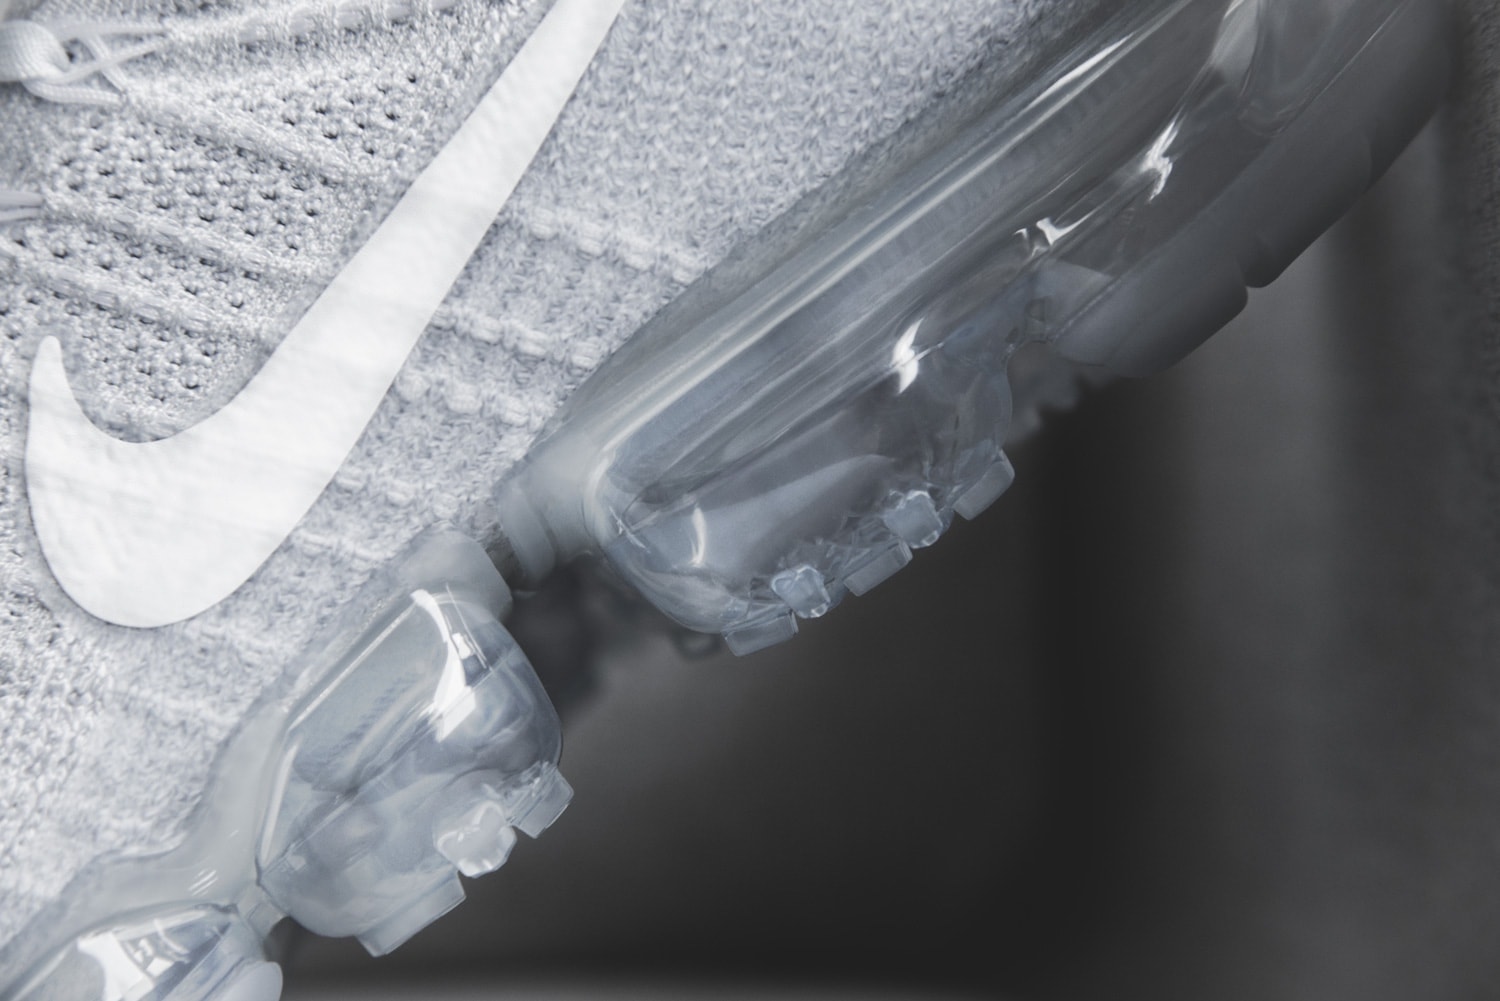 球鞋點評－SneakerLab by Andy Chiu 剖析 Nike Air VaporMax